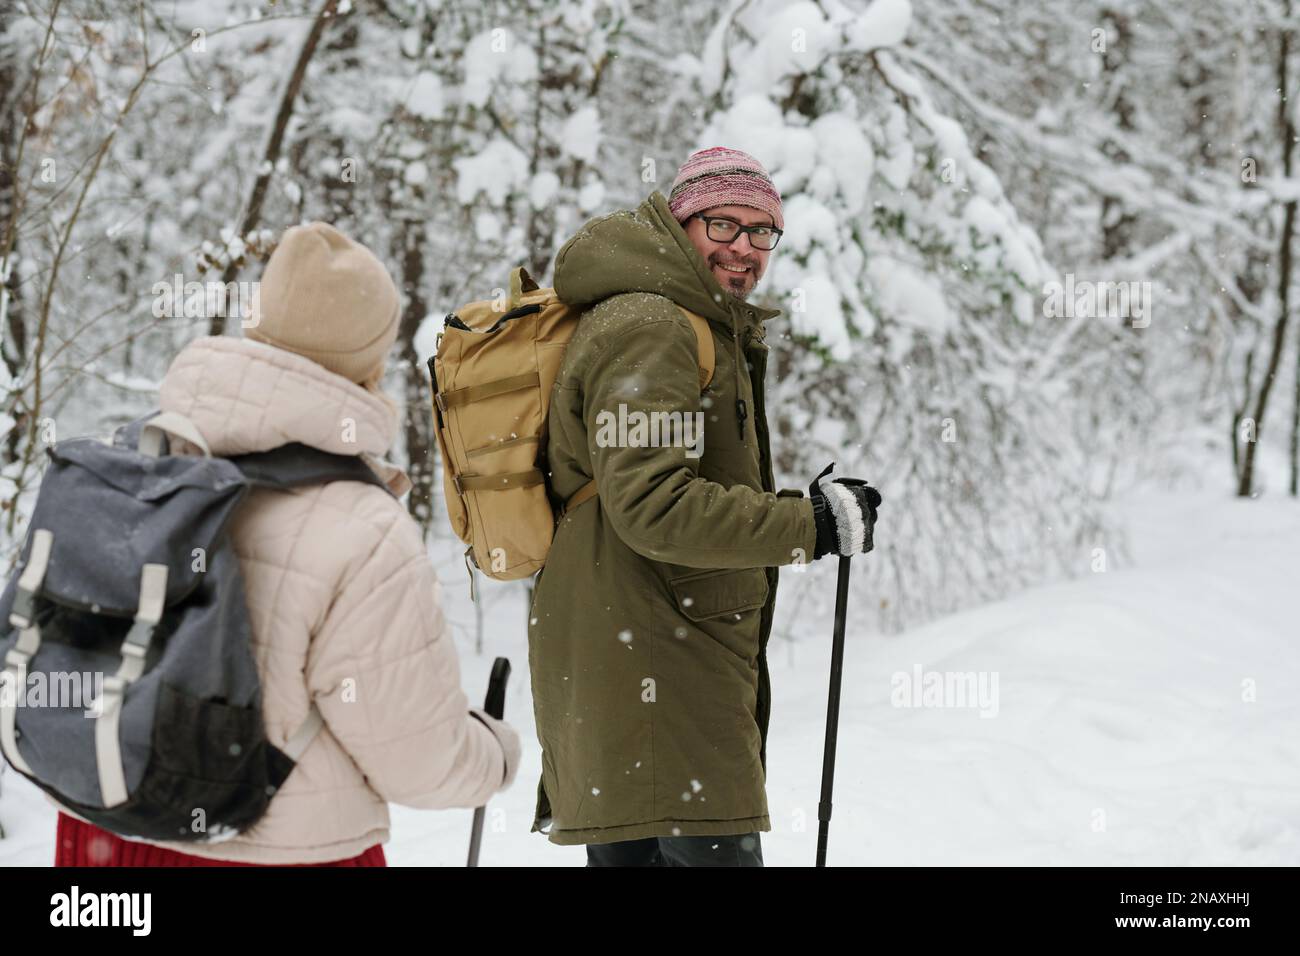 Glücklicher, reifer Mann mit Rucksack und Wanderstöcken, der seine Frau ansieht, während beide auf der schneebedeckten Straße im Wald spazieren Stockfoto